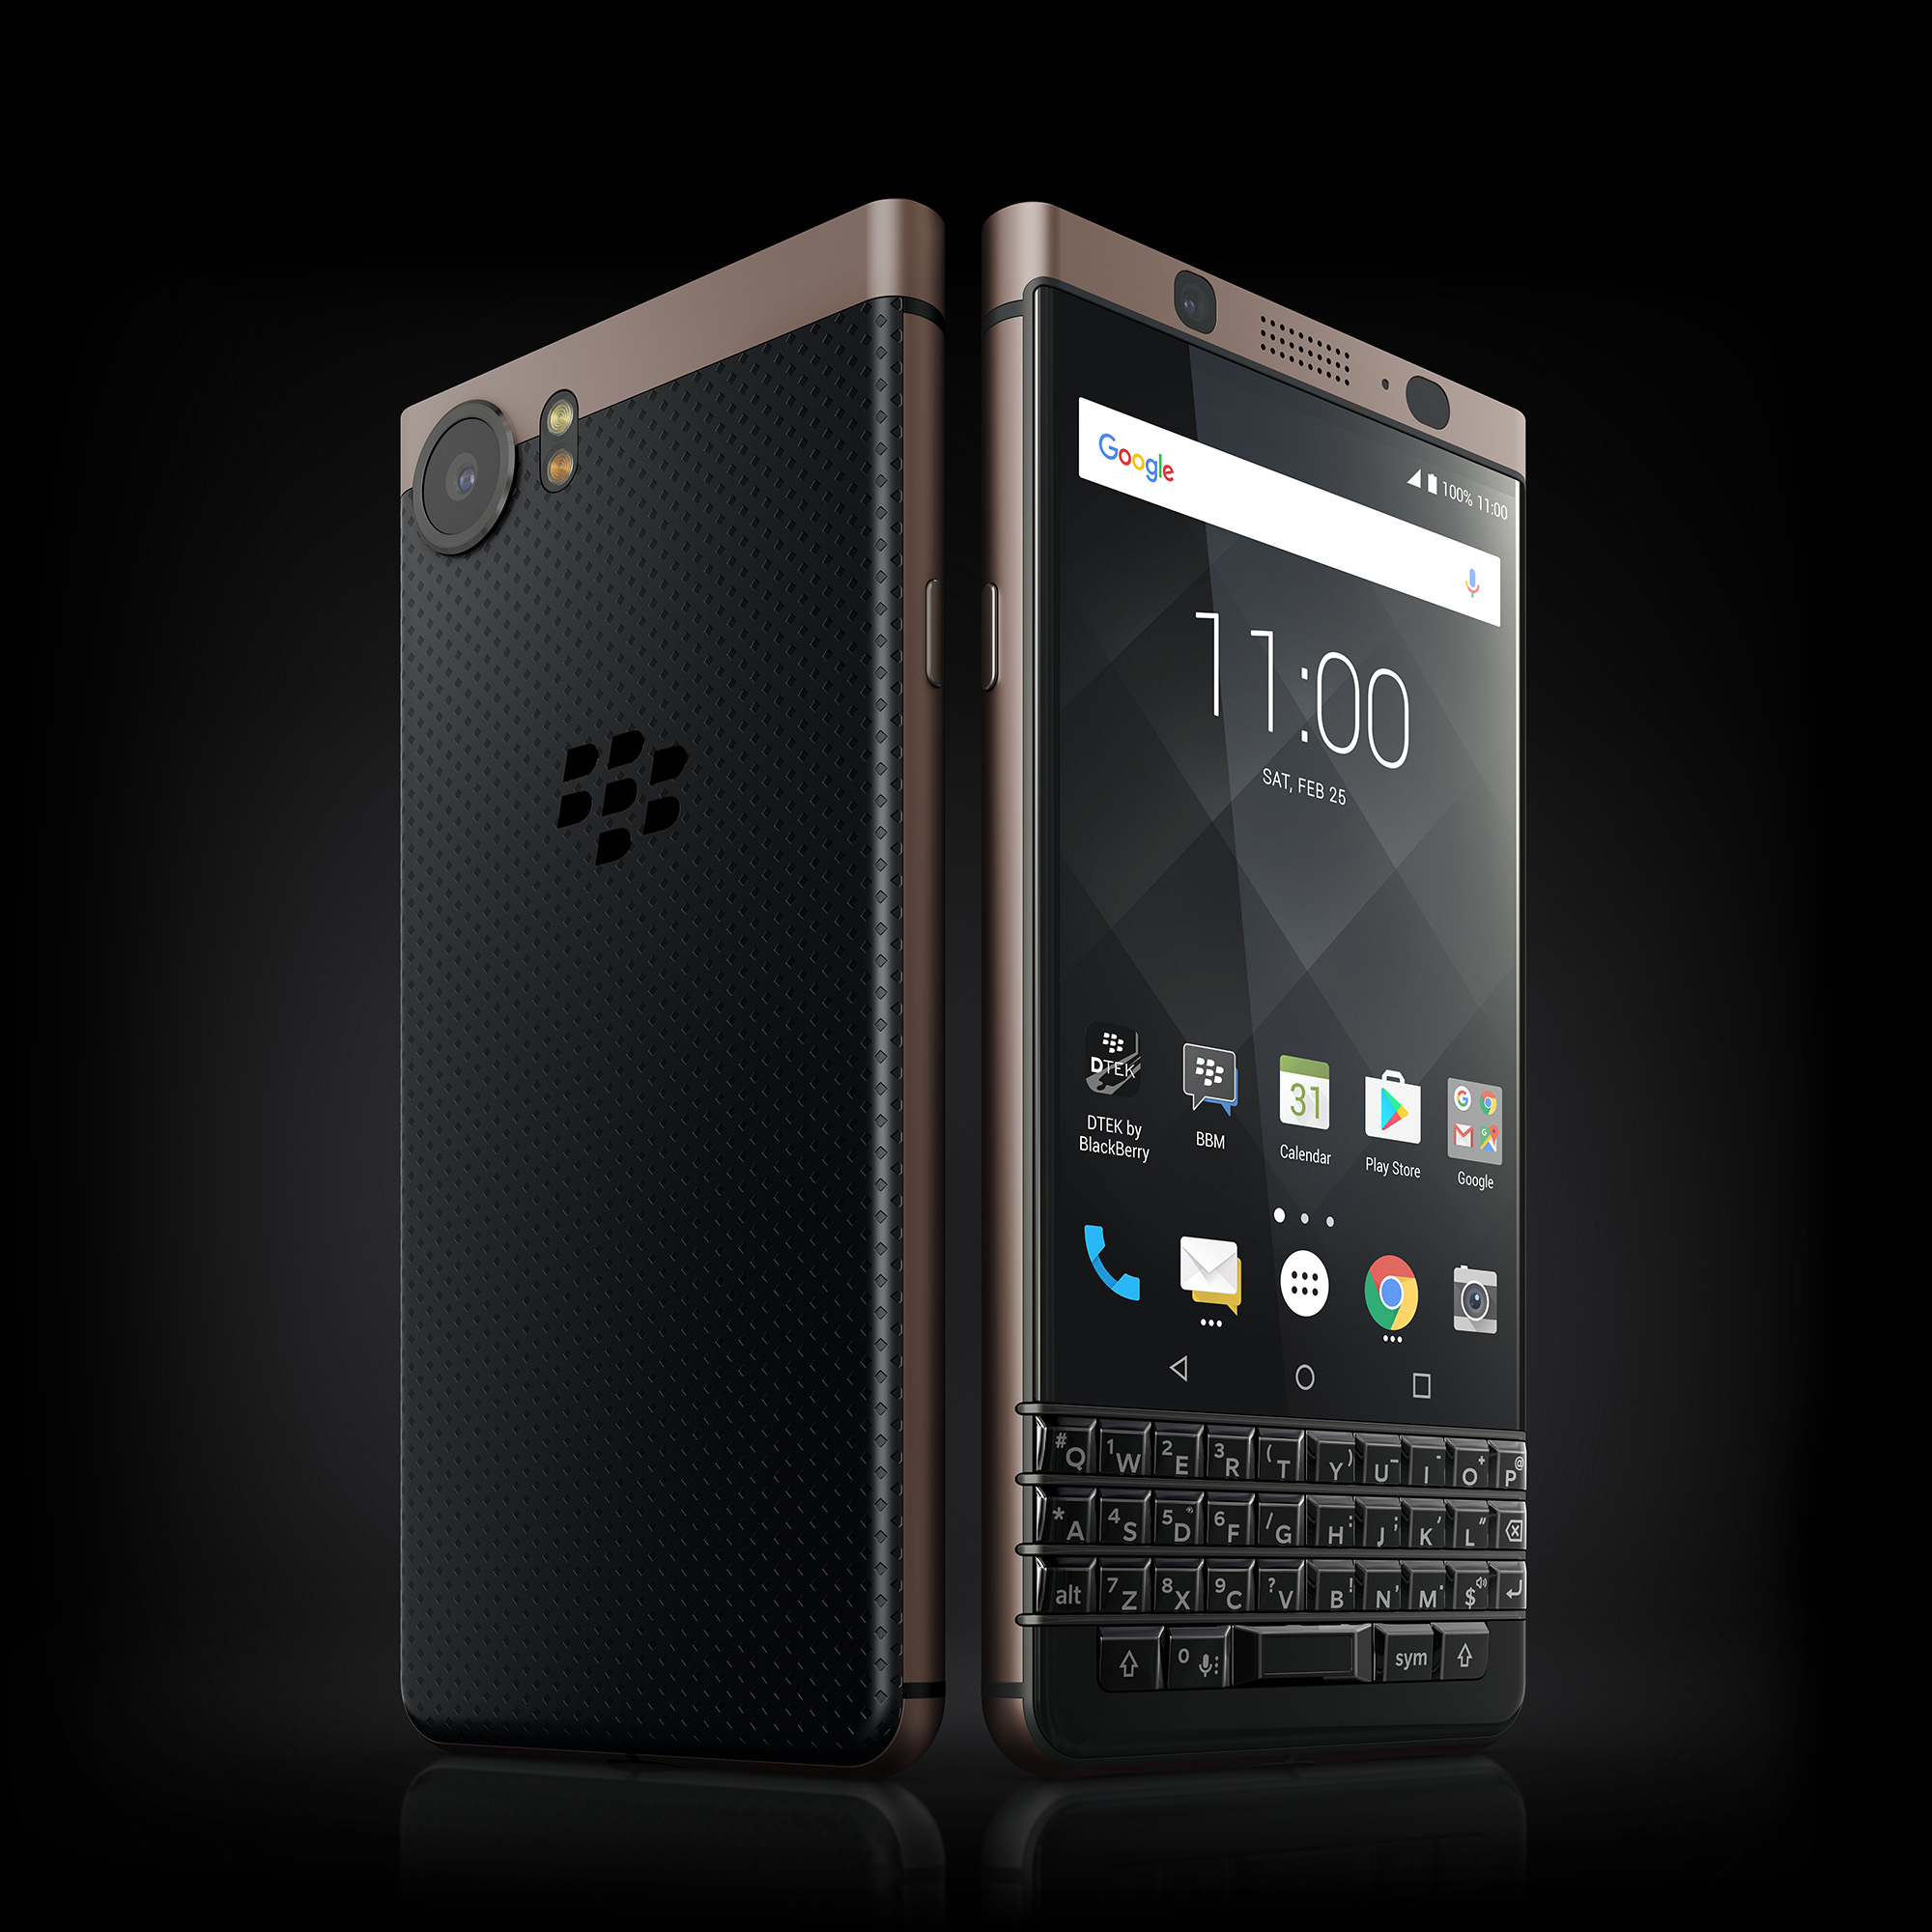 BlackBerry Keyone phiên bản giới hạn Bronze Edition chính thức ra mắt